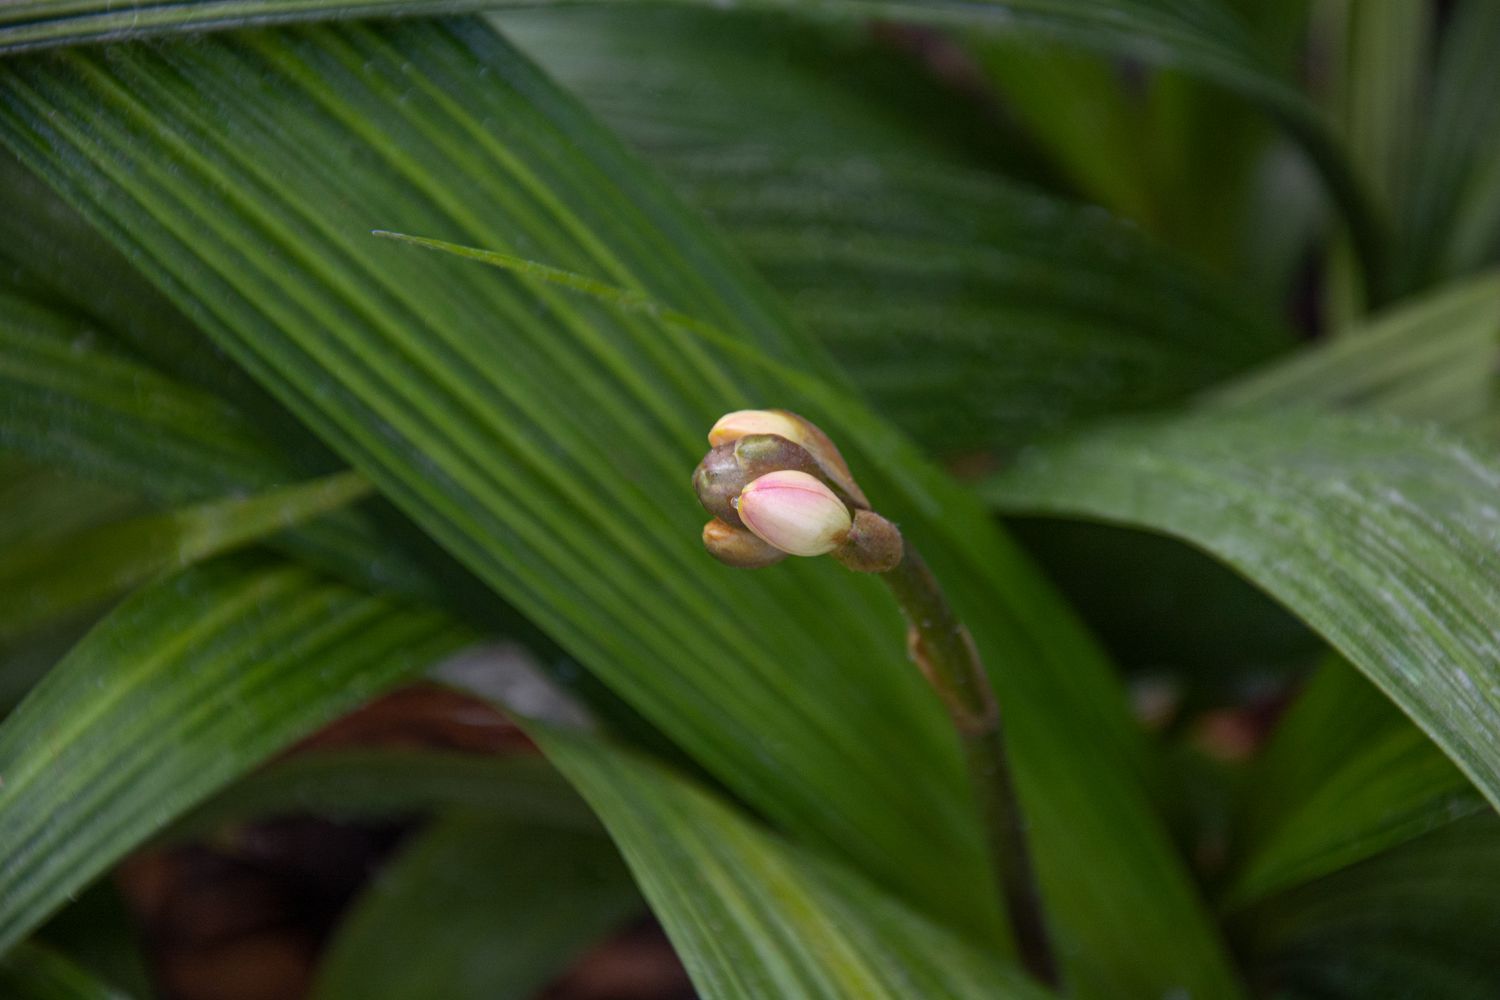 Spathoglottis-Orchideenpflanze mit cremefarbener Knospe an langem Stiel in Nahaufnahme